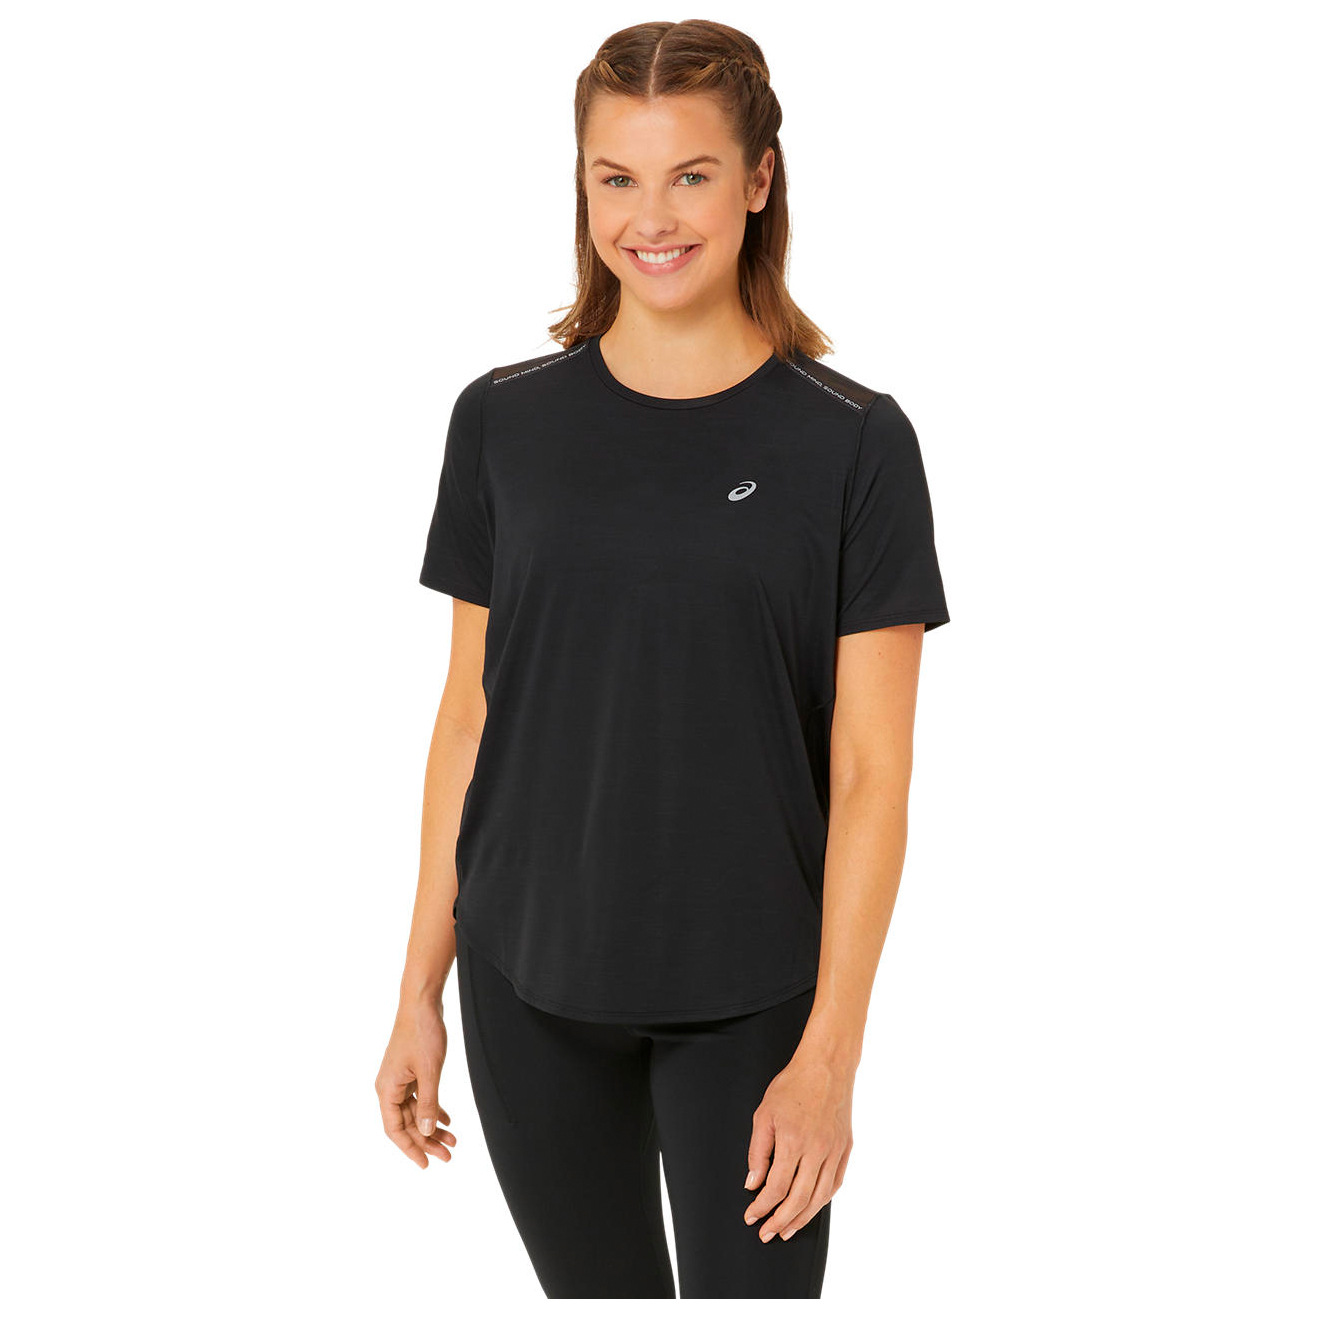 Беговая рубашка Asics Women's Road S/S Top, цвет Performance Black